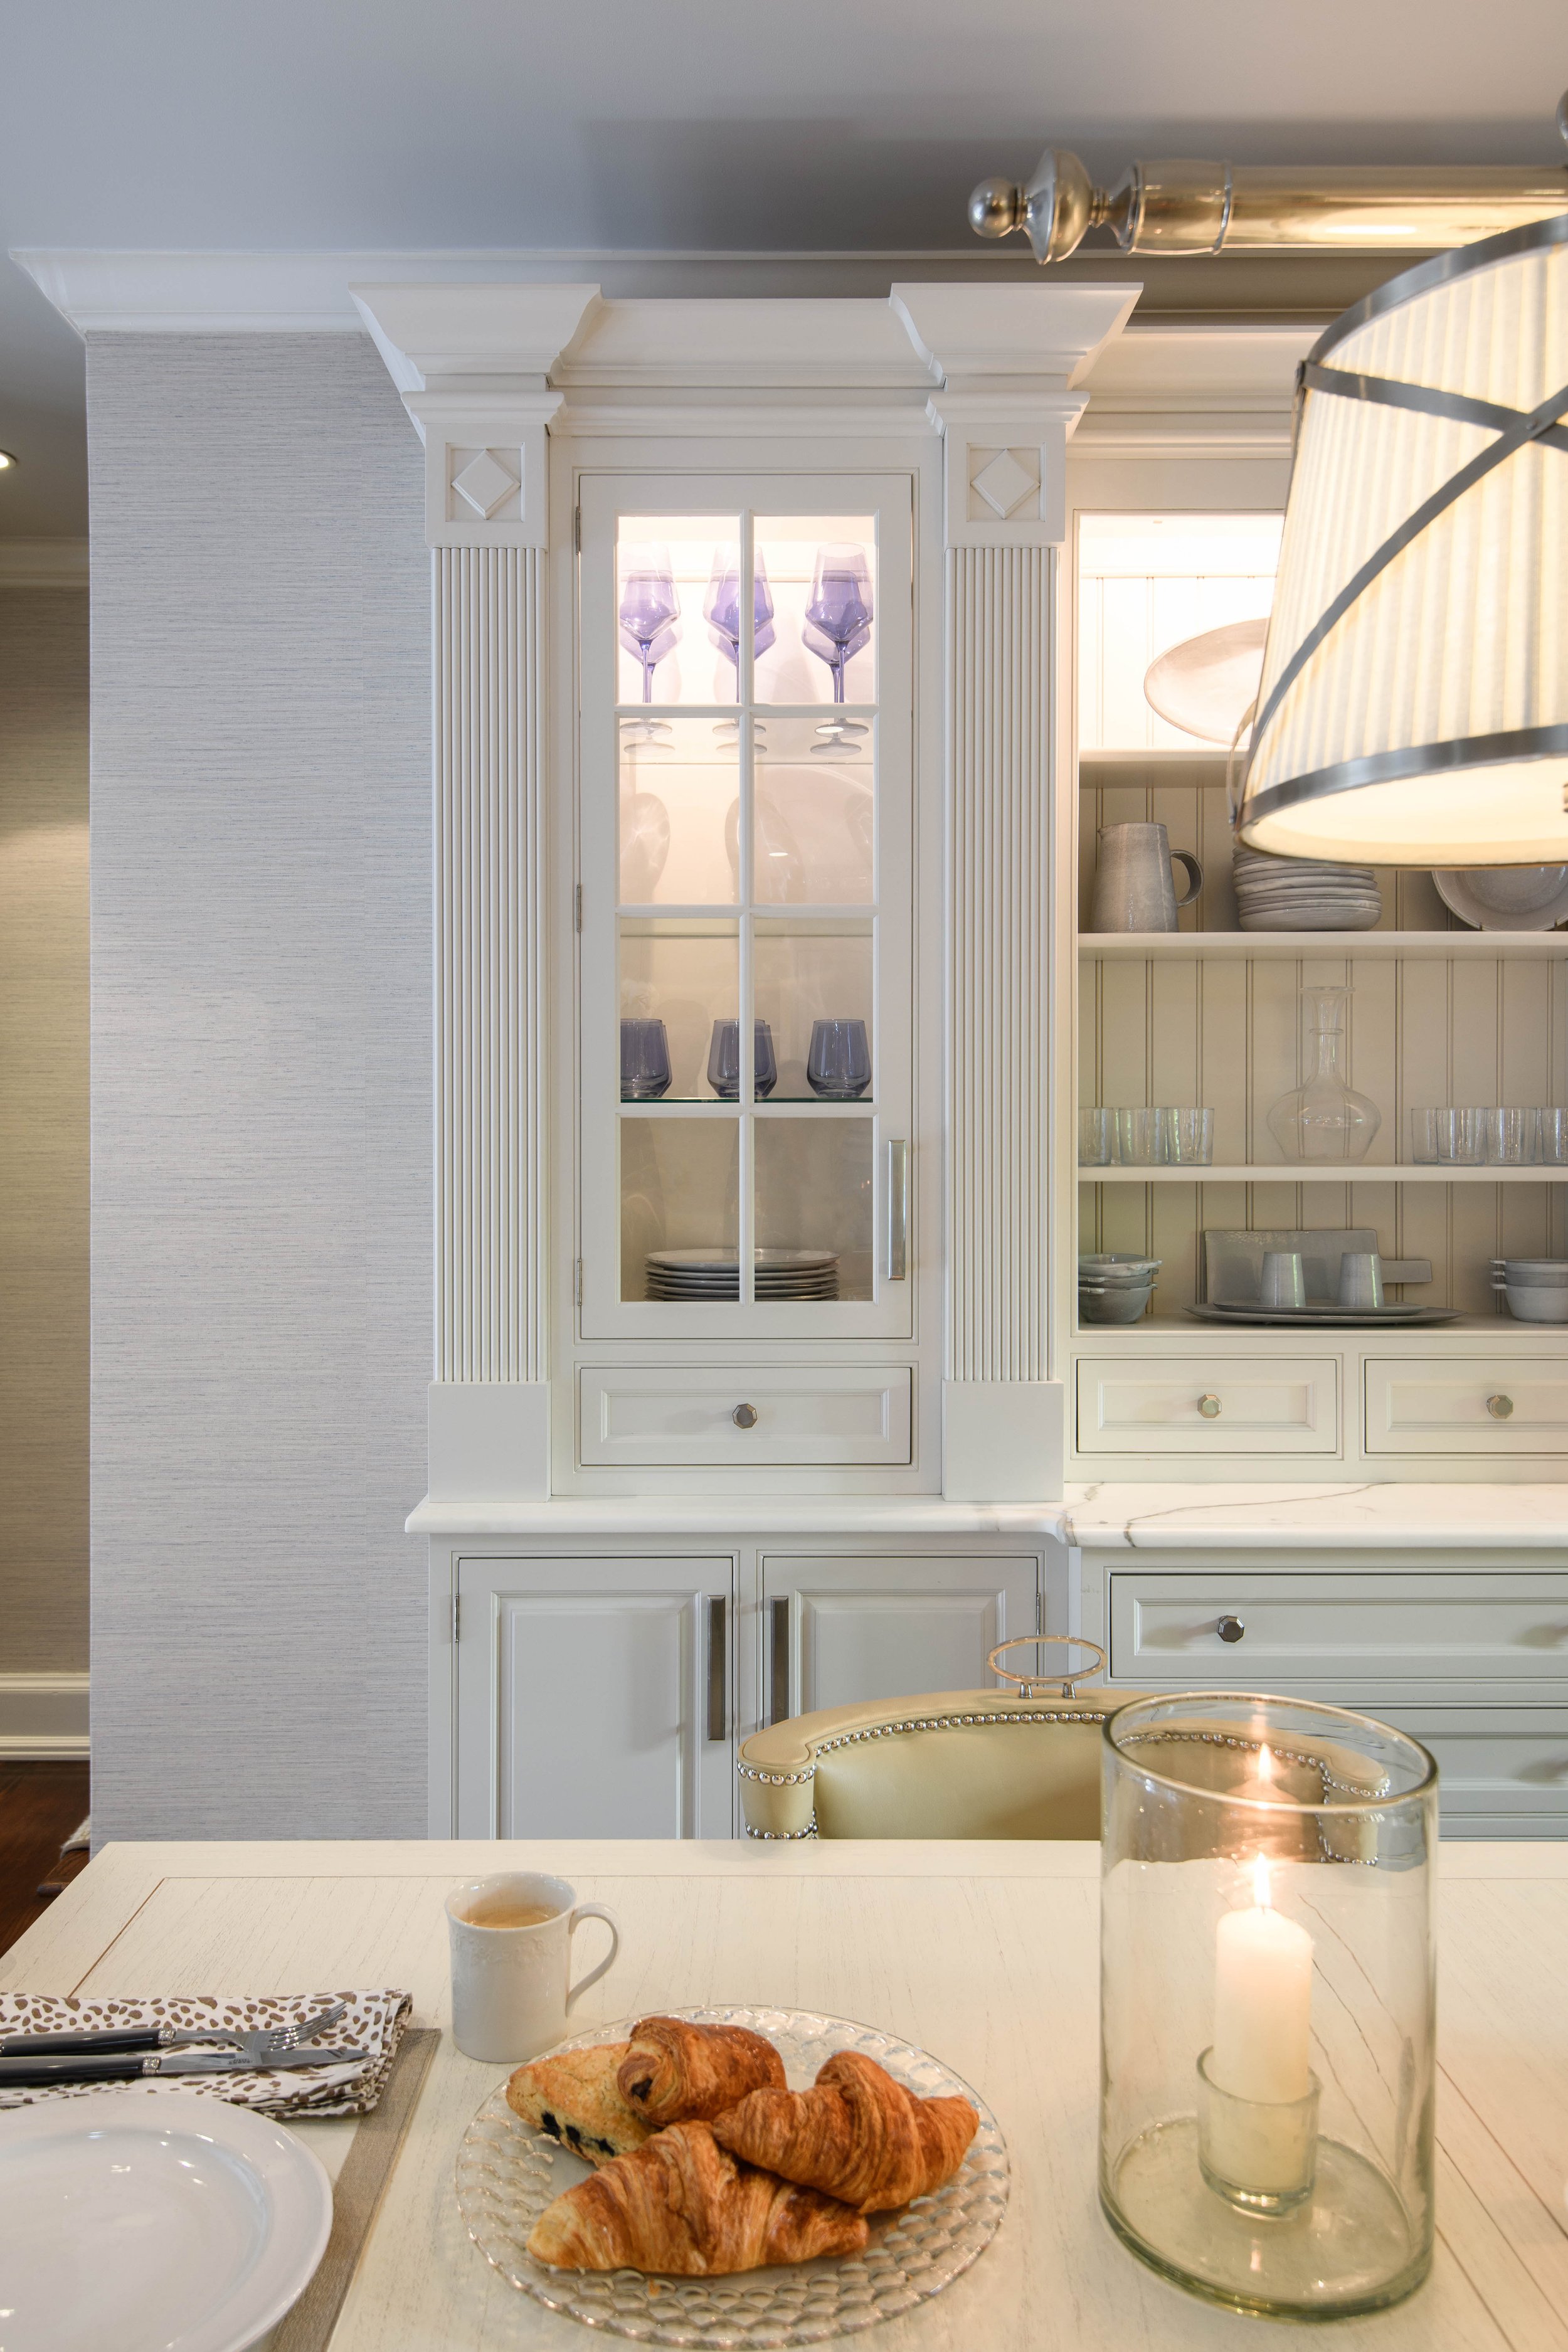 14-simple-light-white-cabinets-textured-kitchen-westechester-rinfret-interior-designs.jpg